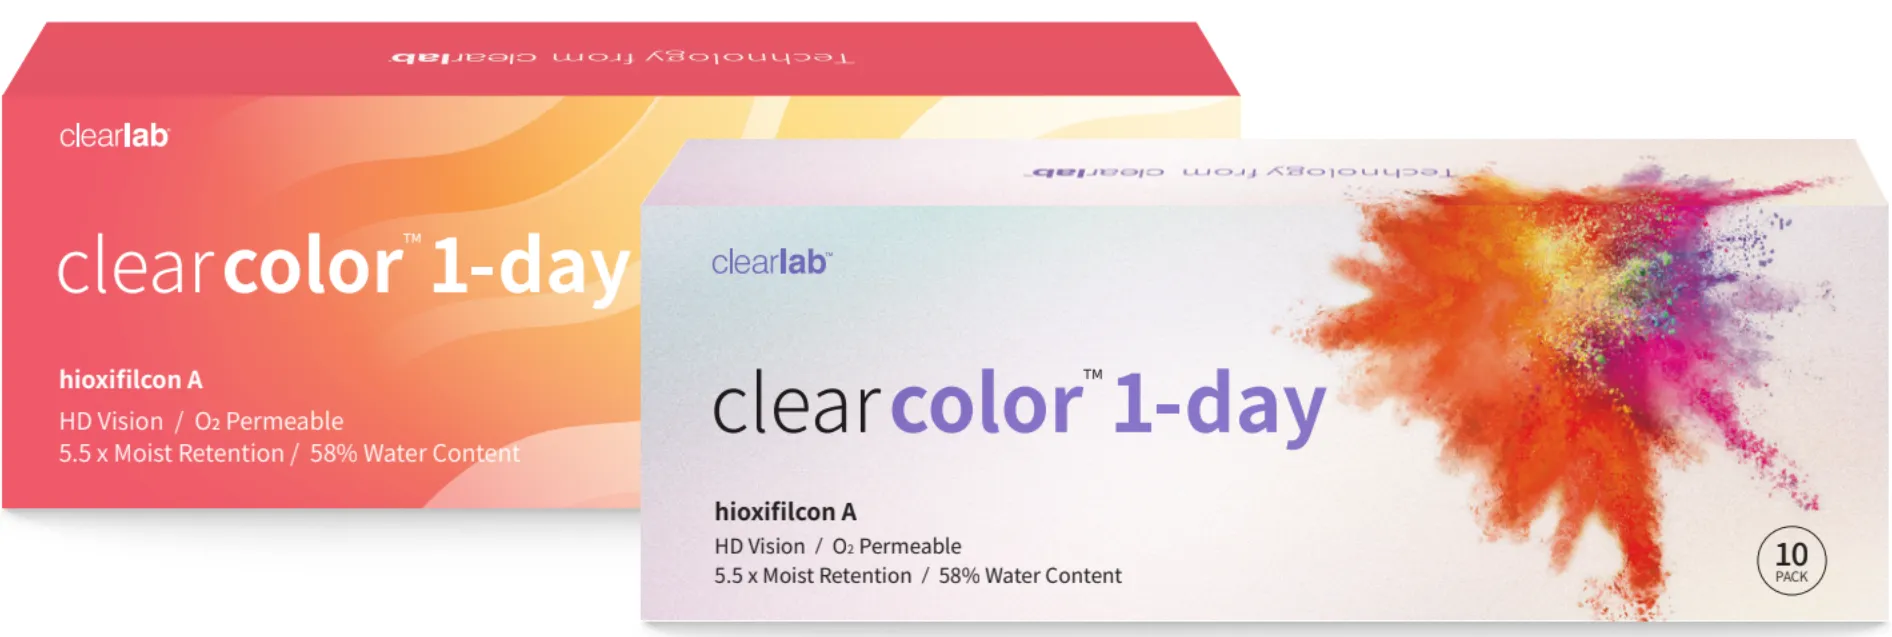 ClearLab ClearColor 1-Day kolorowe soczewki kontaktowe szare -4,75, 10 szt.